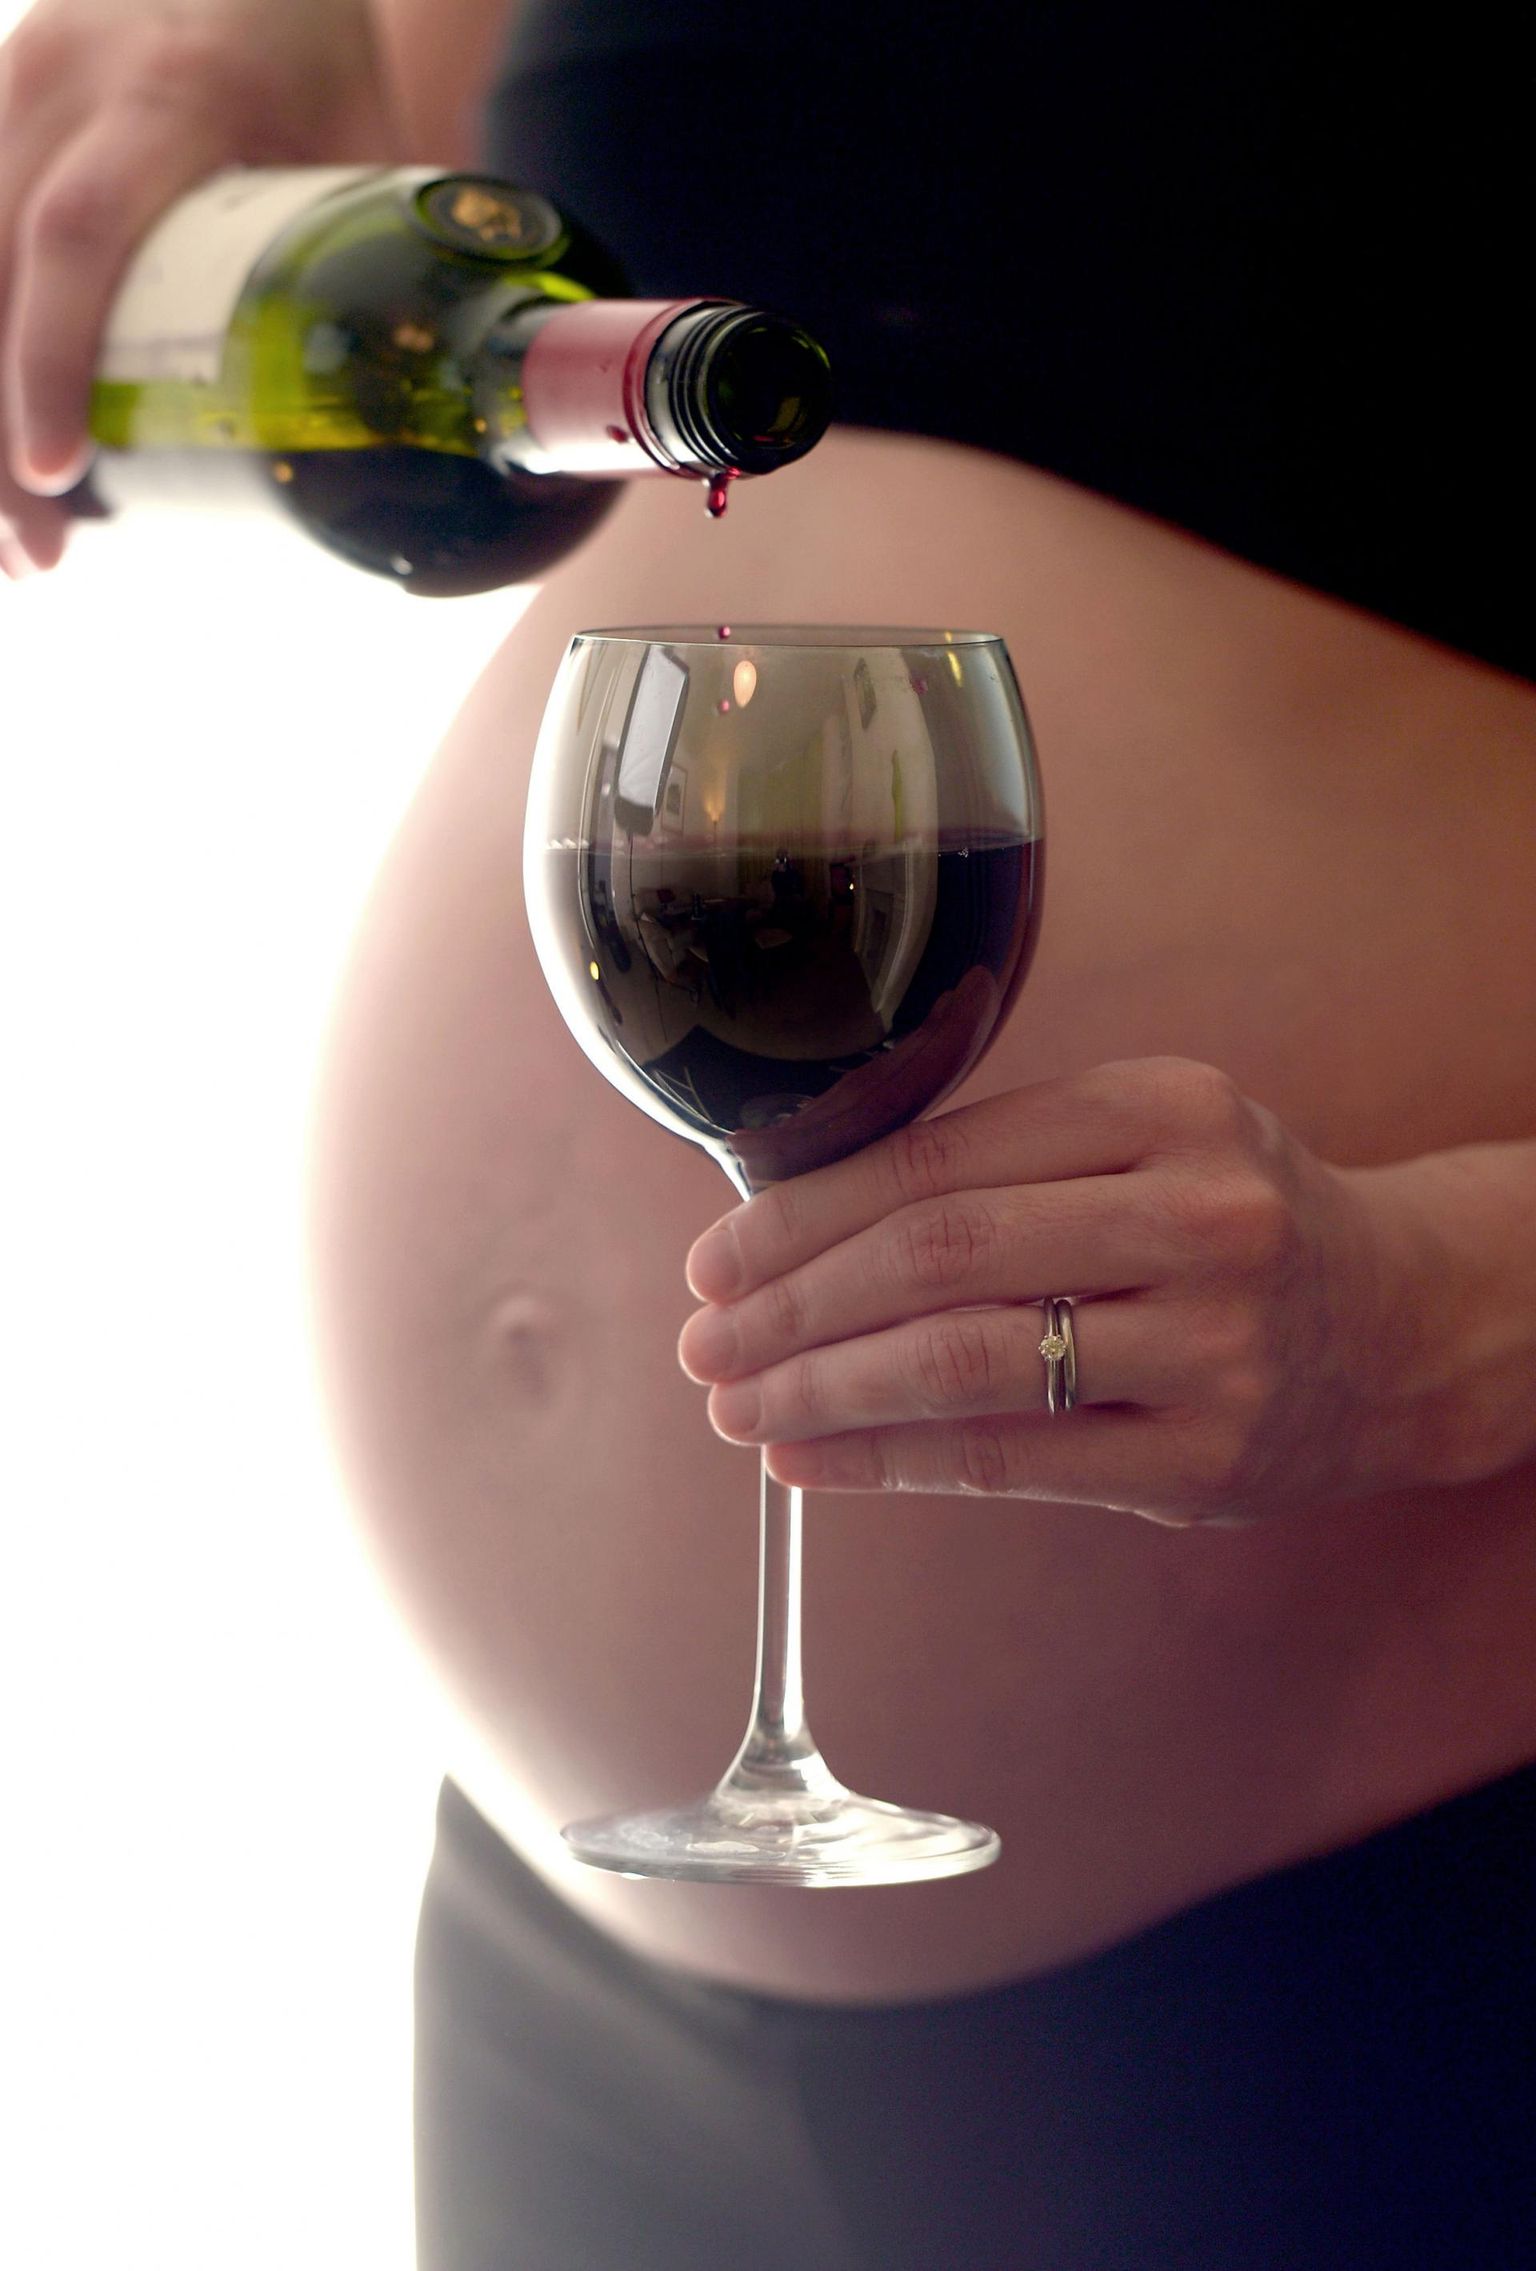 Alkoholi tarvitamine raseduse ajal võib mõjutada haiguste teket soodustavaid protsesse, selgub Helsingi Ülikooli, Tervisetehnoloogiate Arenduskeskuse ja Tartu Ülikooli Kliinilise Meditsiini Instituudi ühisuuringust. 